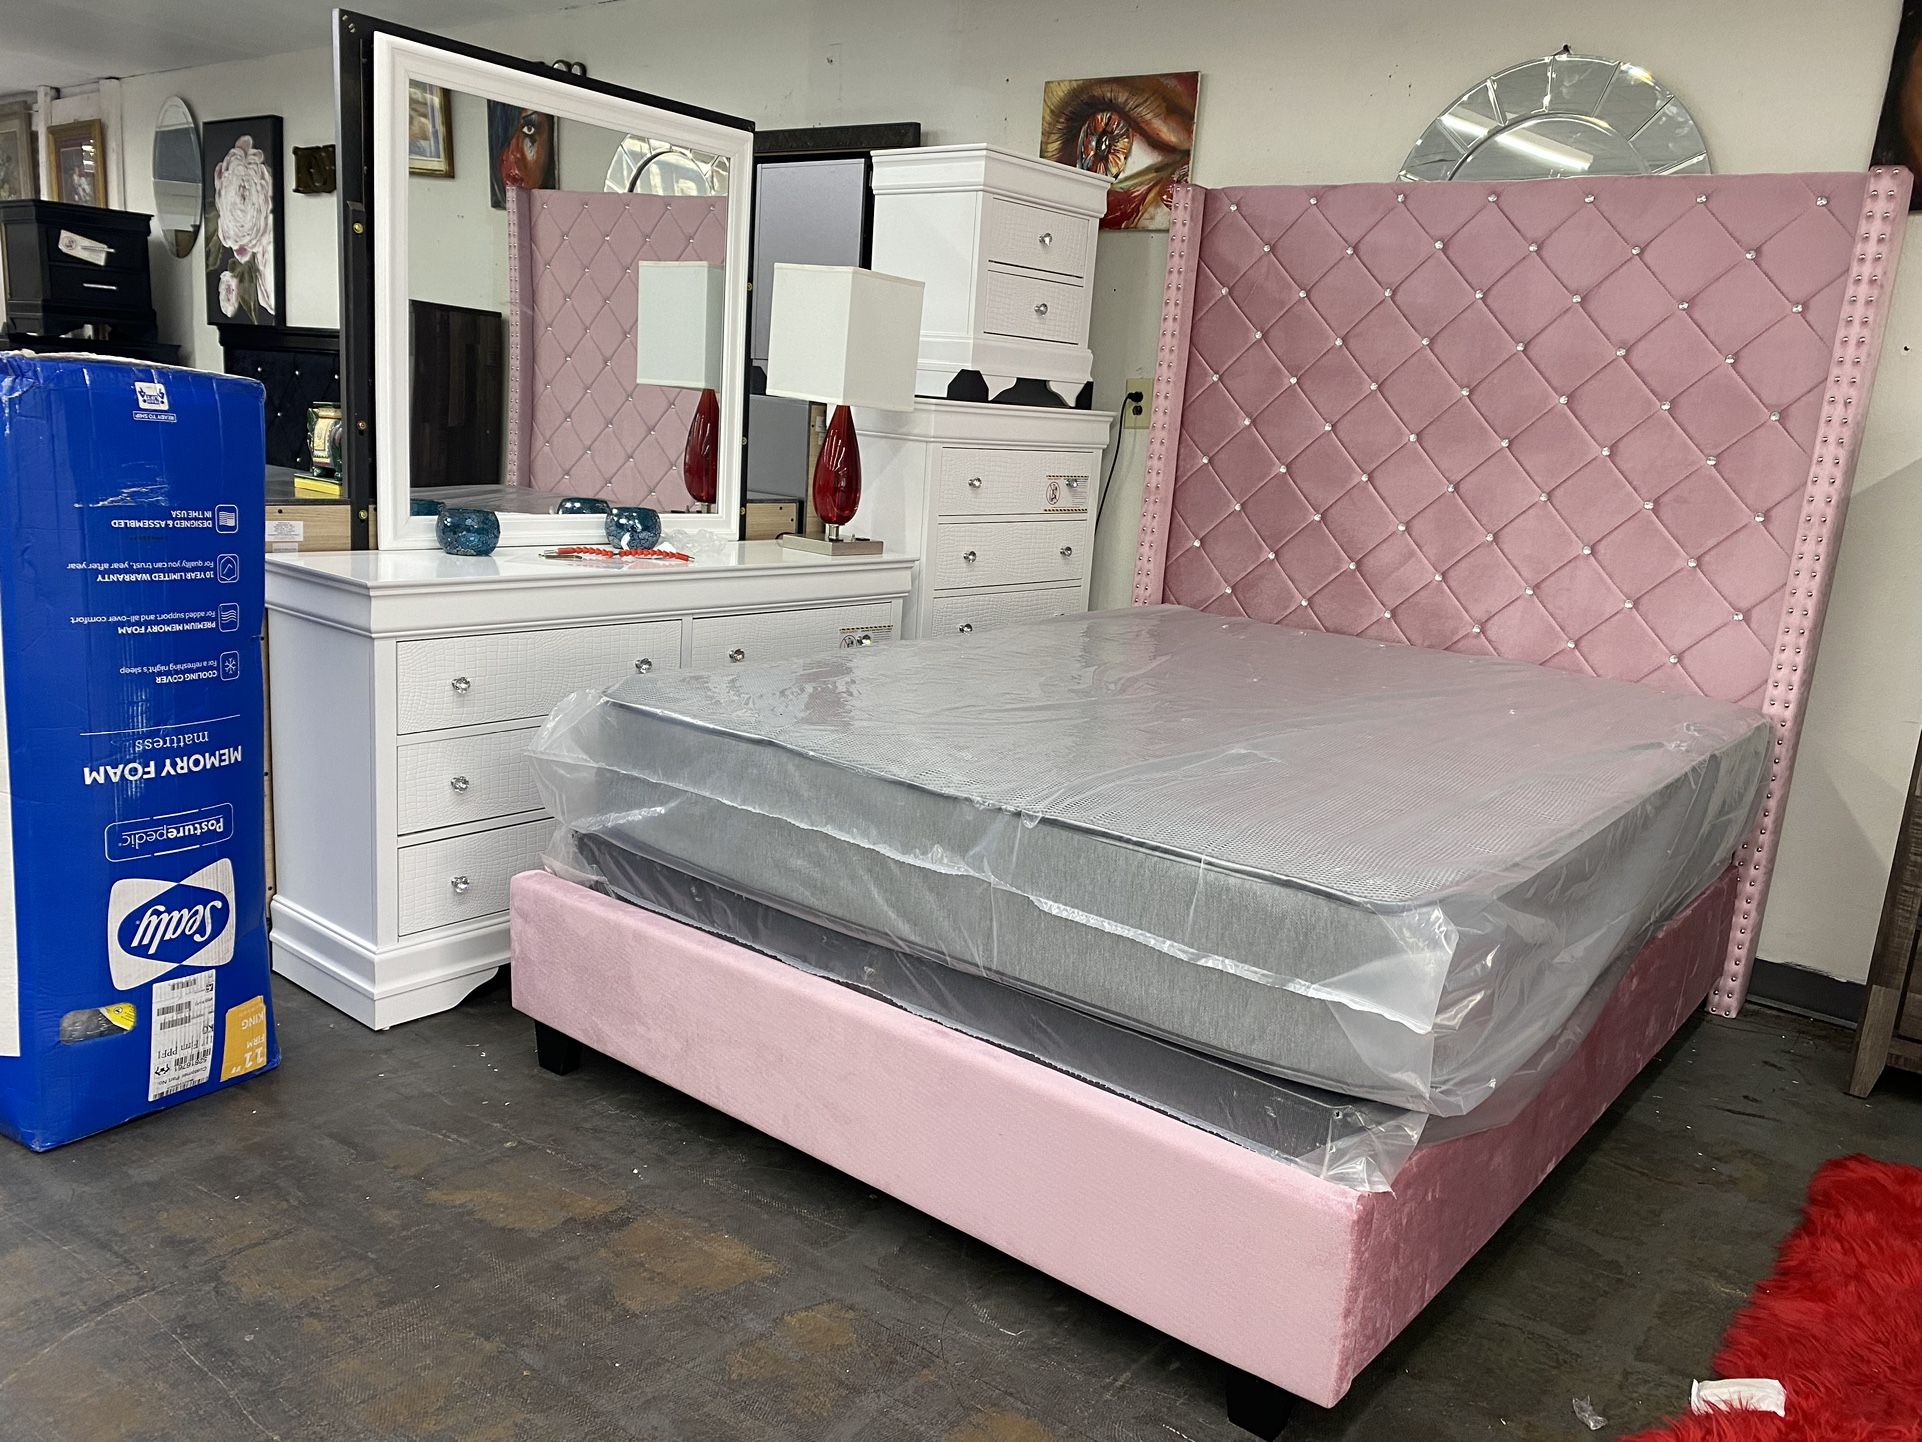 New Queen Bedroom Set For $1500